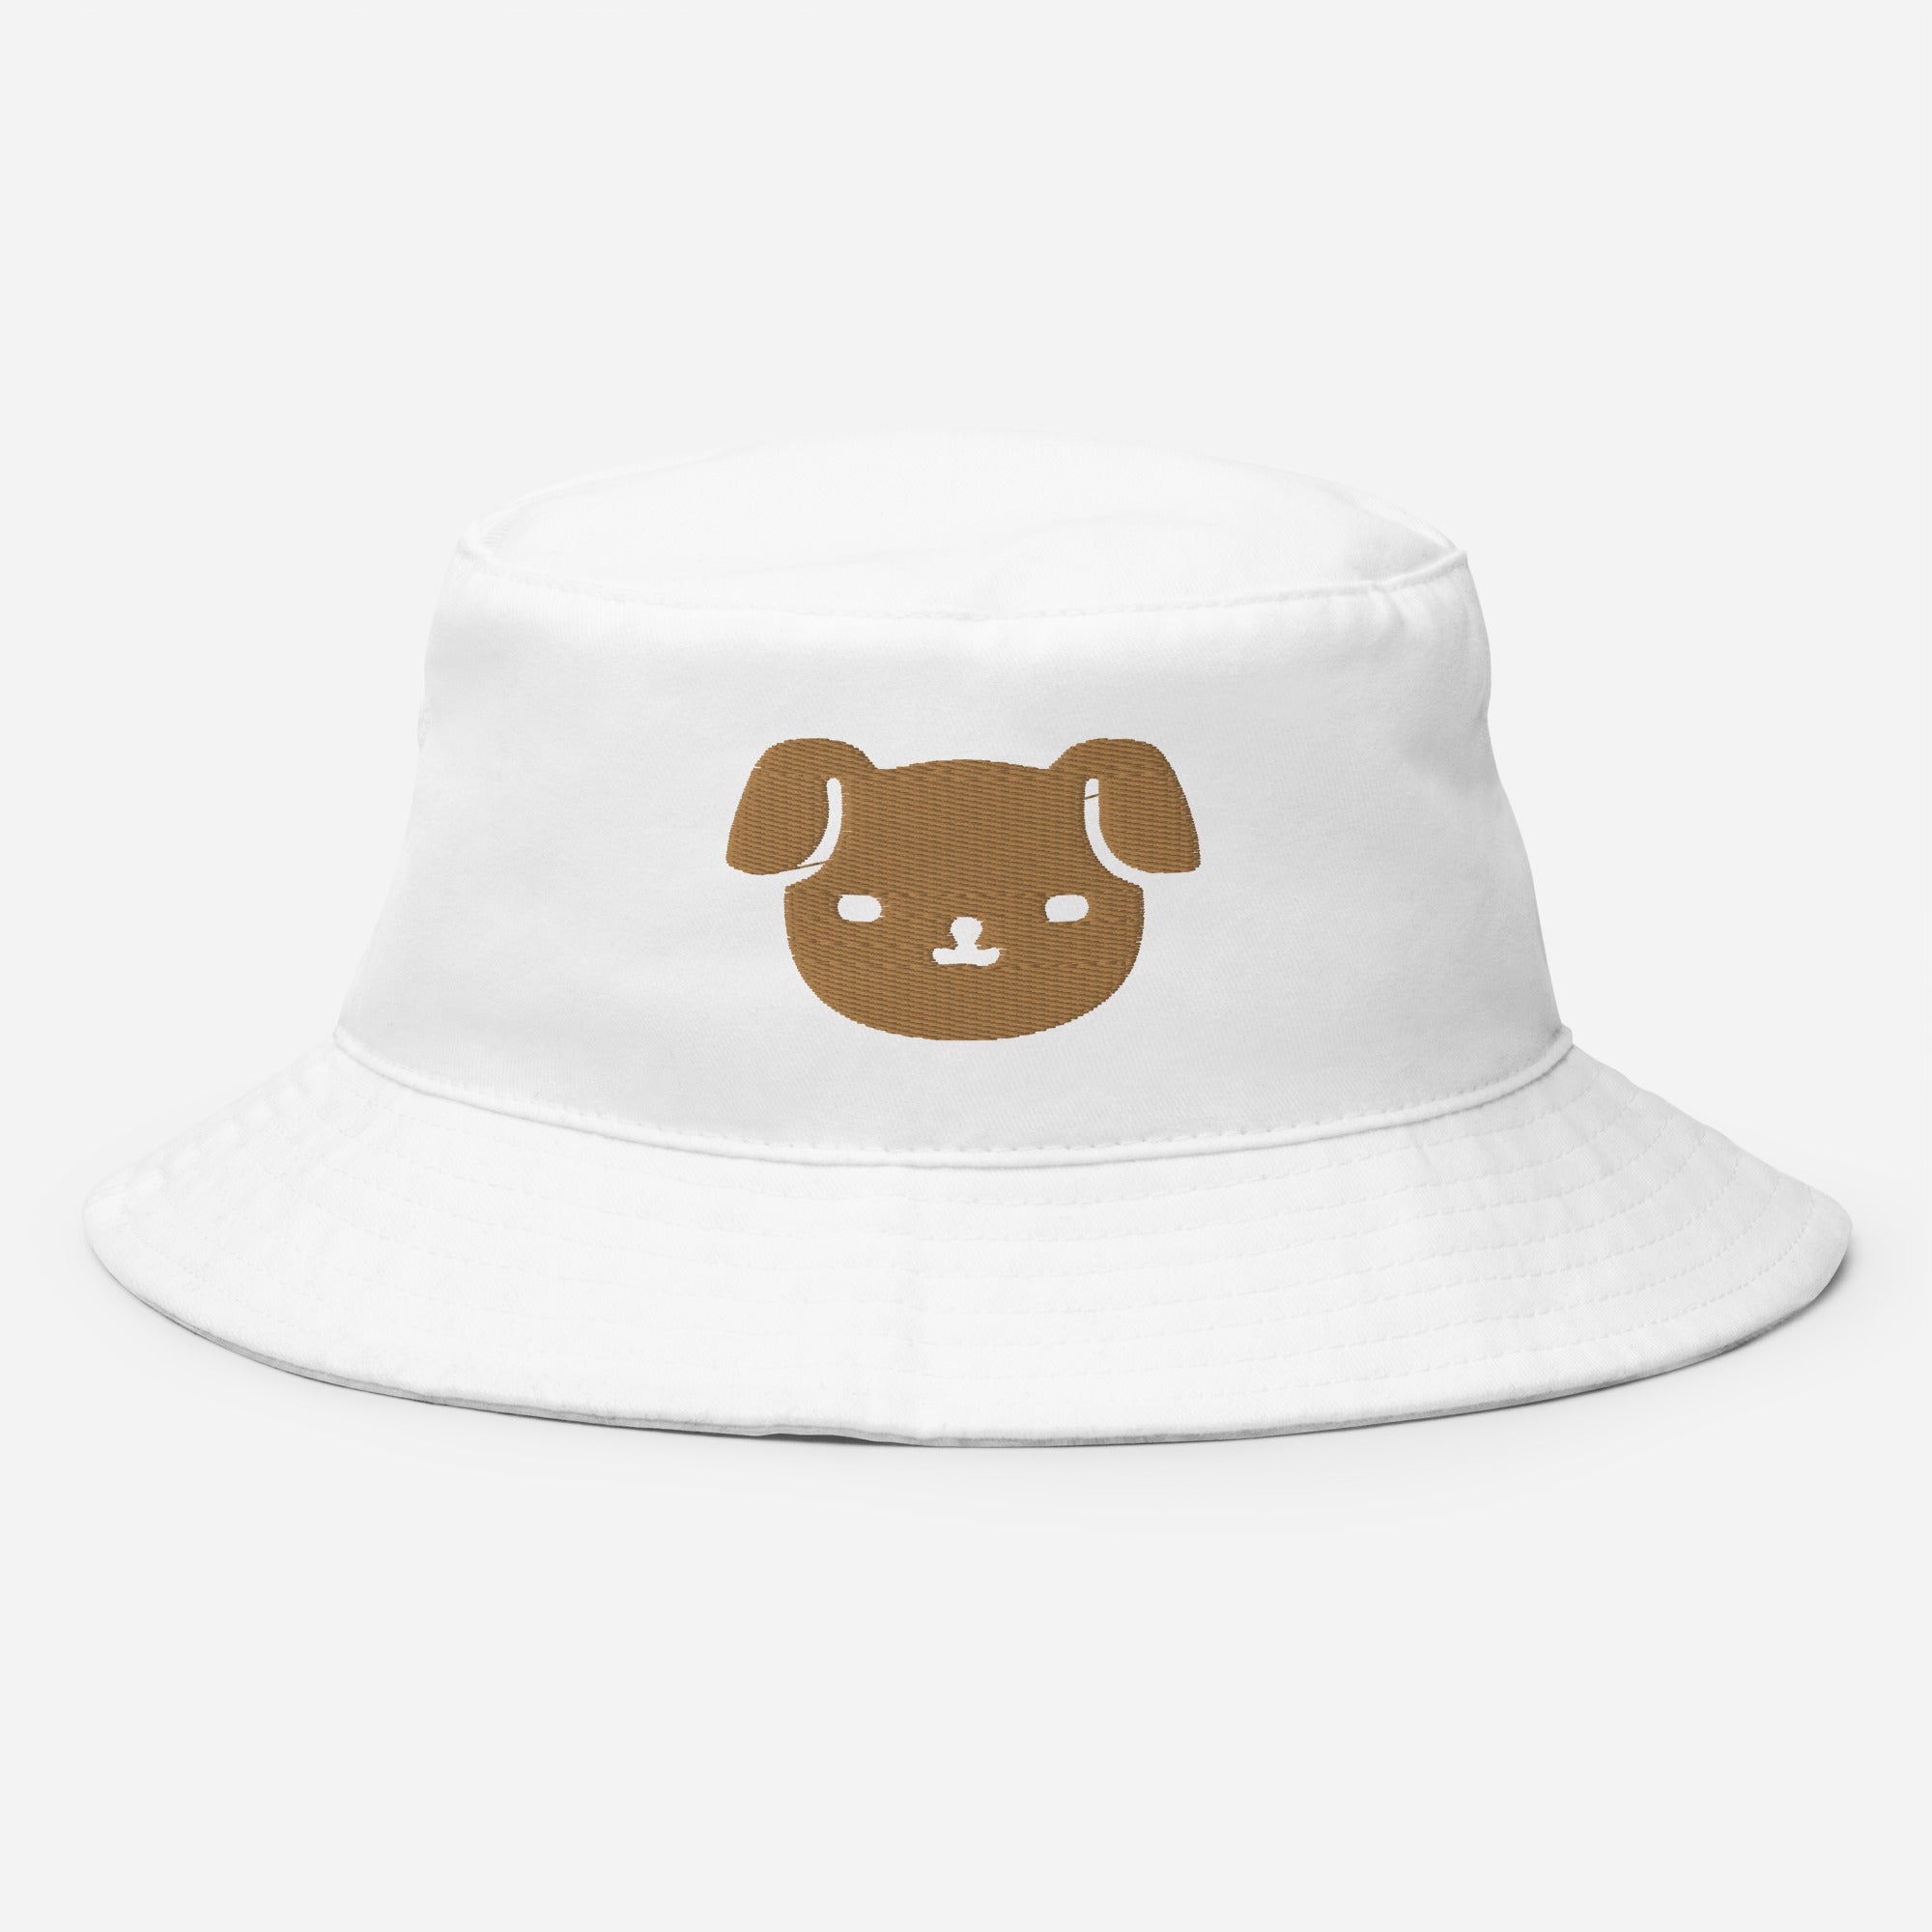 Puppy Dog Bucket Hat, Embroidered Dog Lover Bucket Hat, Handmade Cartoon Dog Unisex Cotton Sun Hat